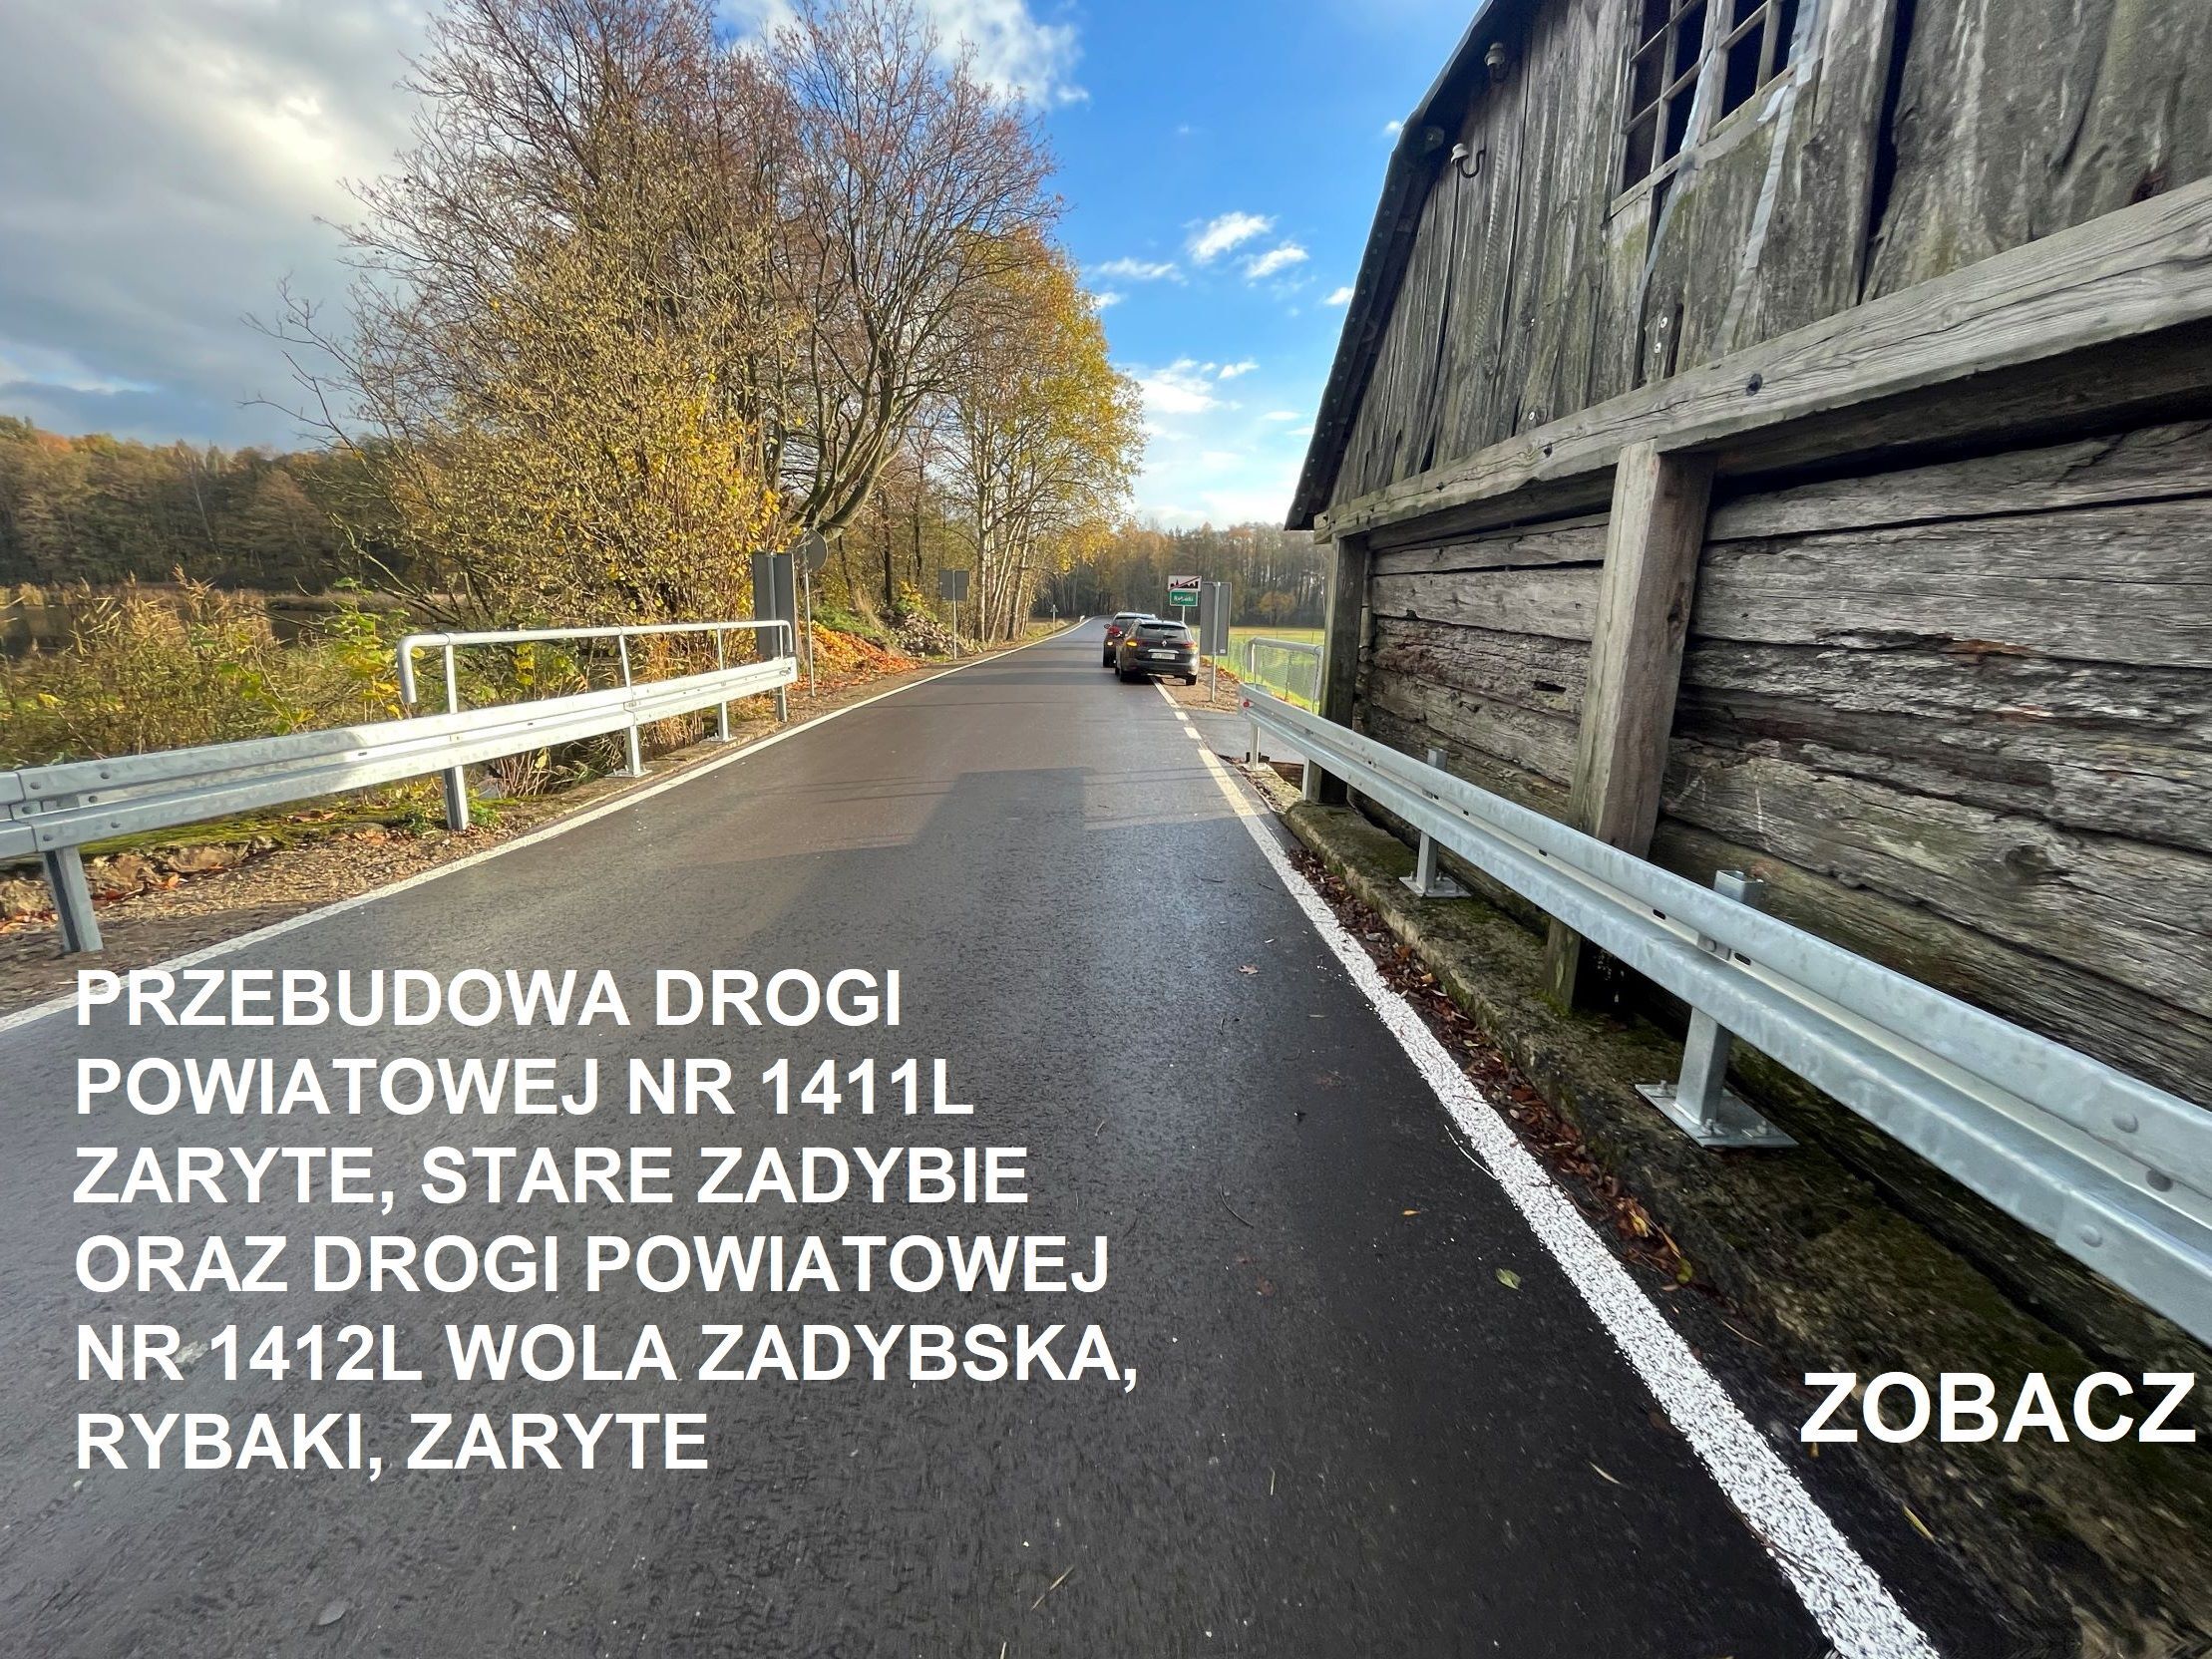 Droga asfaltowa z białą barierką obok drewnianej konstrukcji, z samochodami i lasem w tle, niebo z chmurami oraz informacyjny napis.